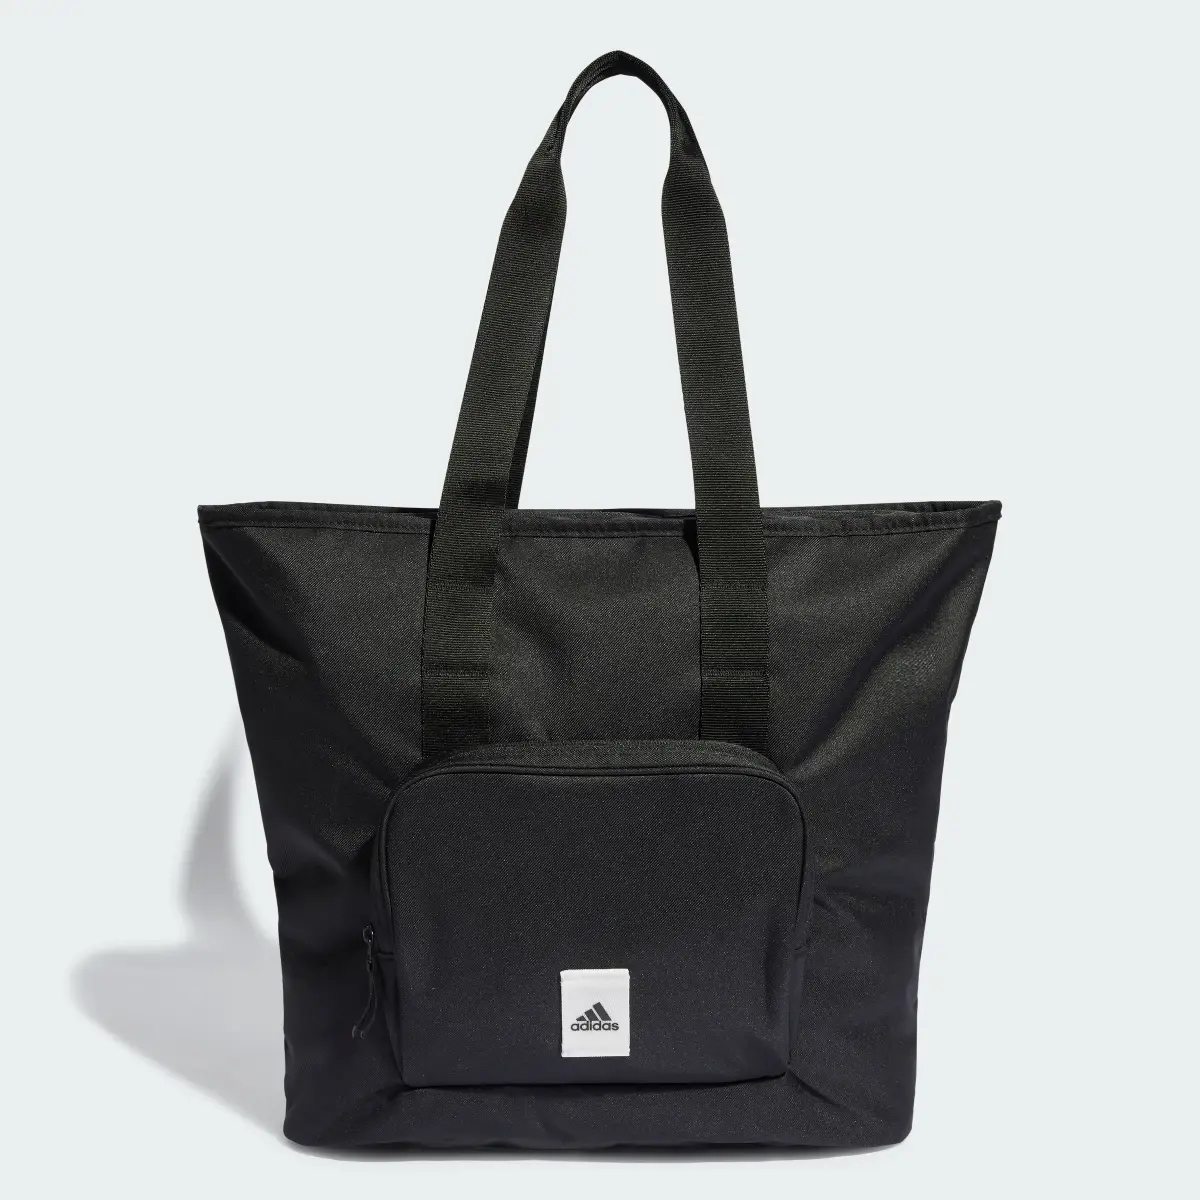 Adidas Tote Bag Prime. 2